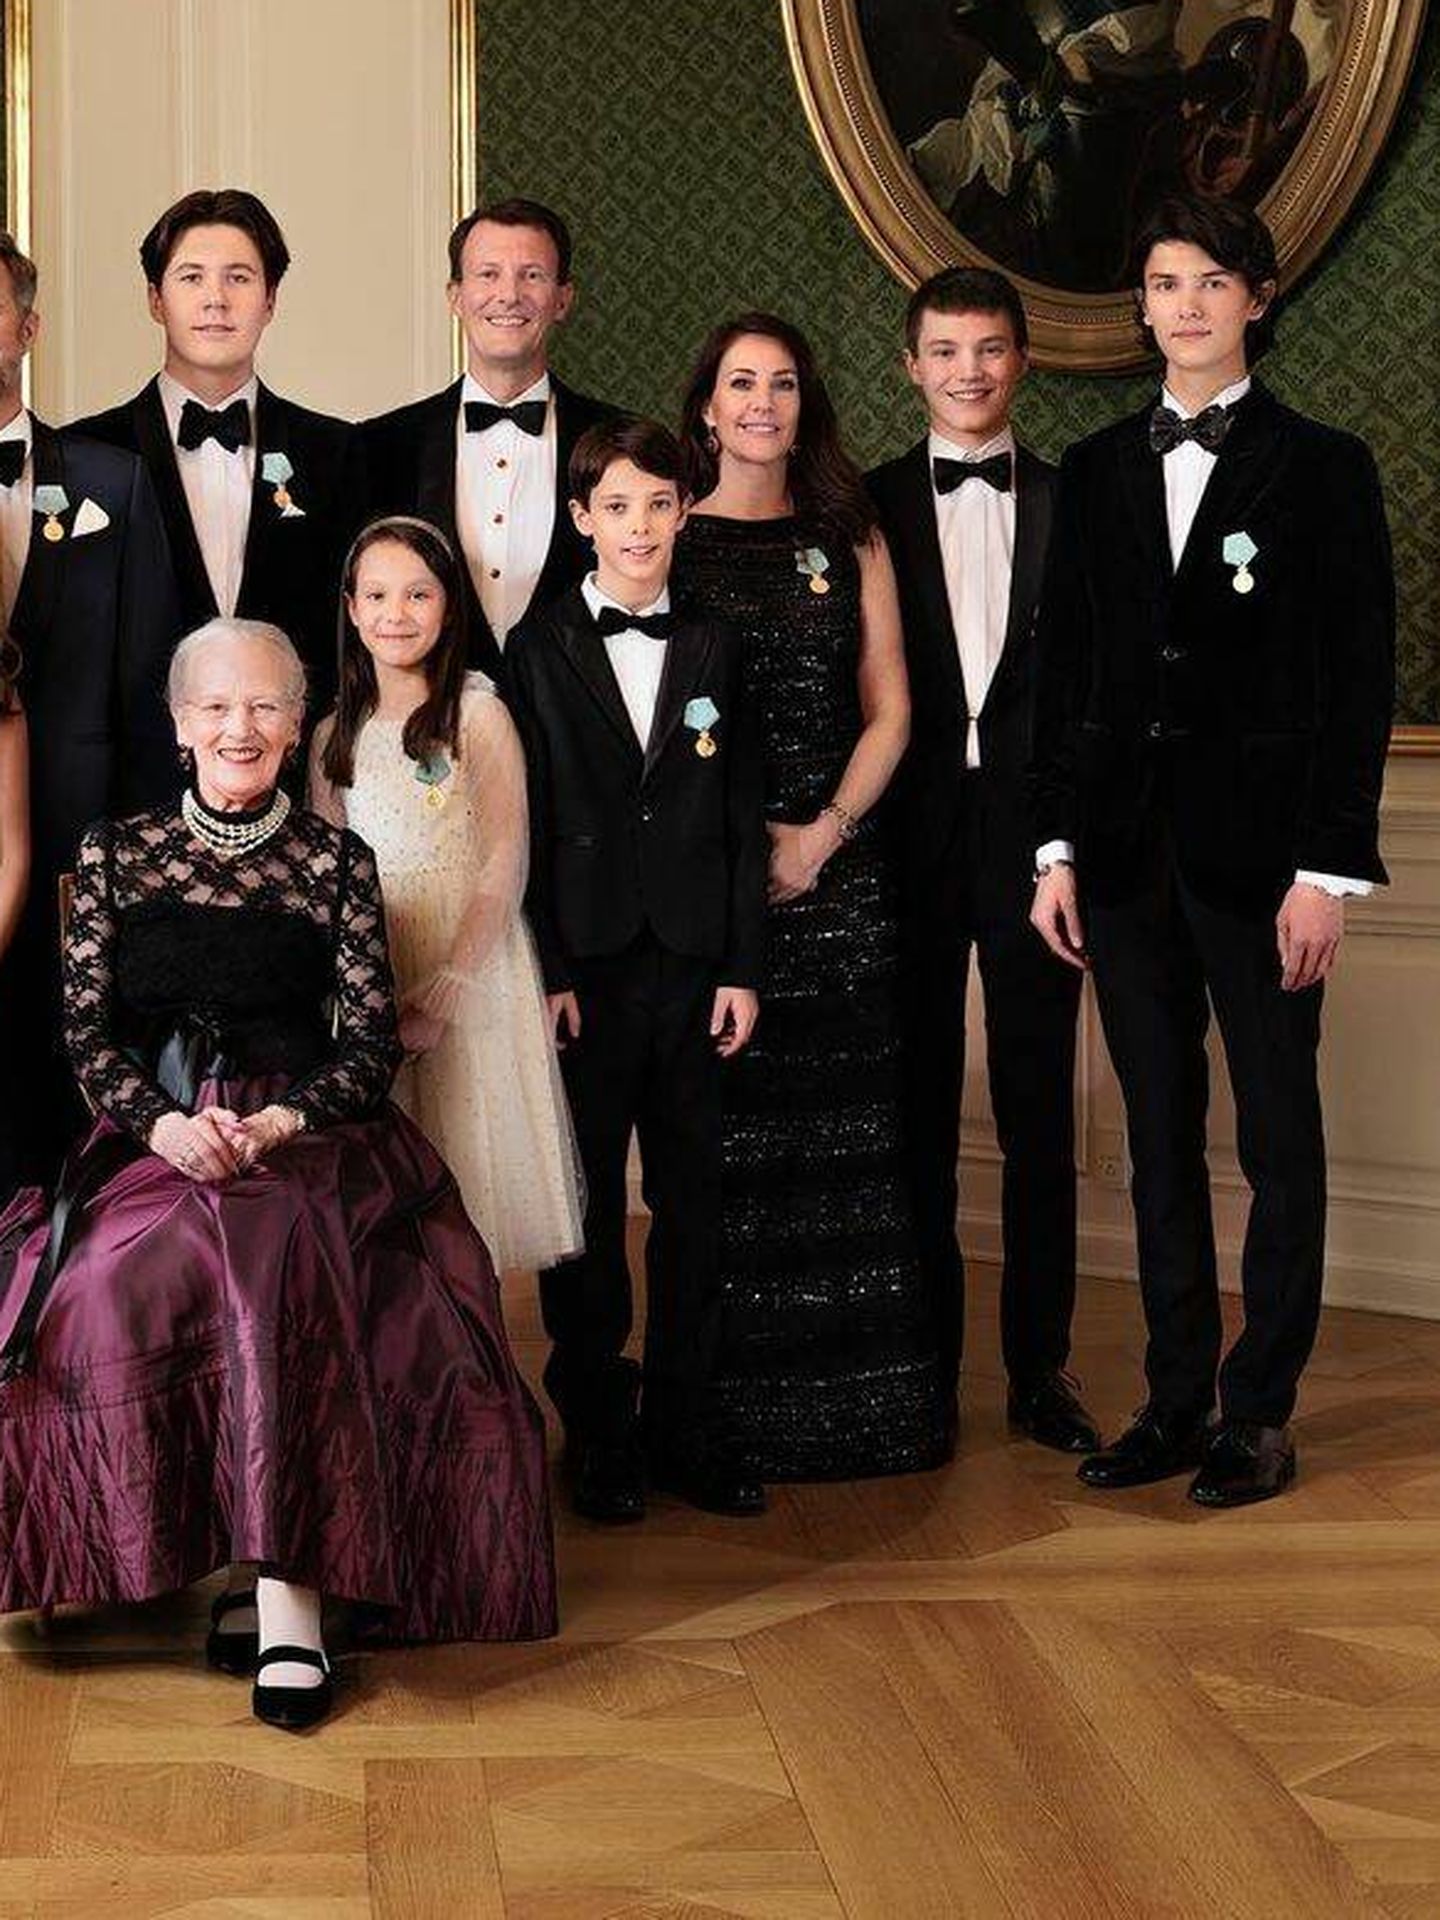 Parte de la familia real danesa, durante la cena. (@desdanskongehus)